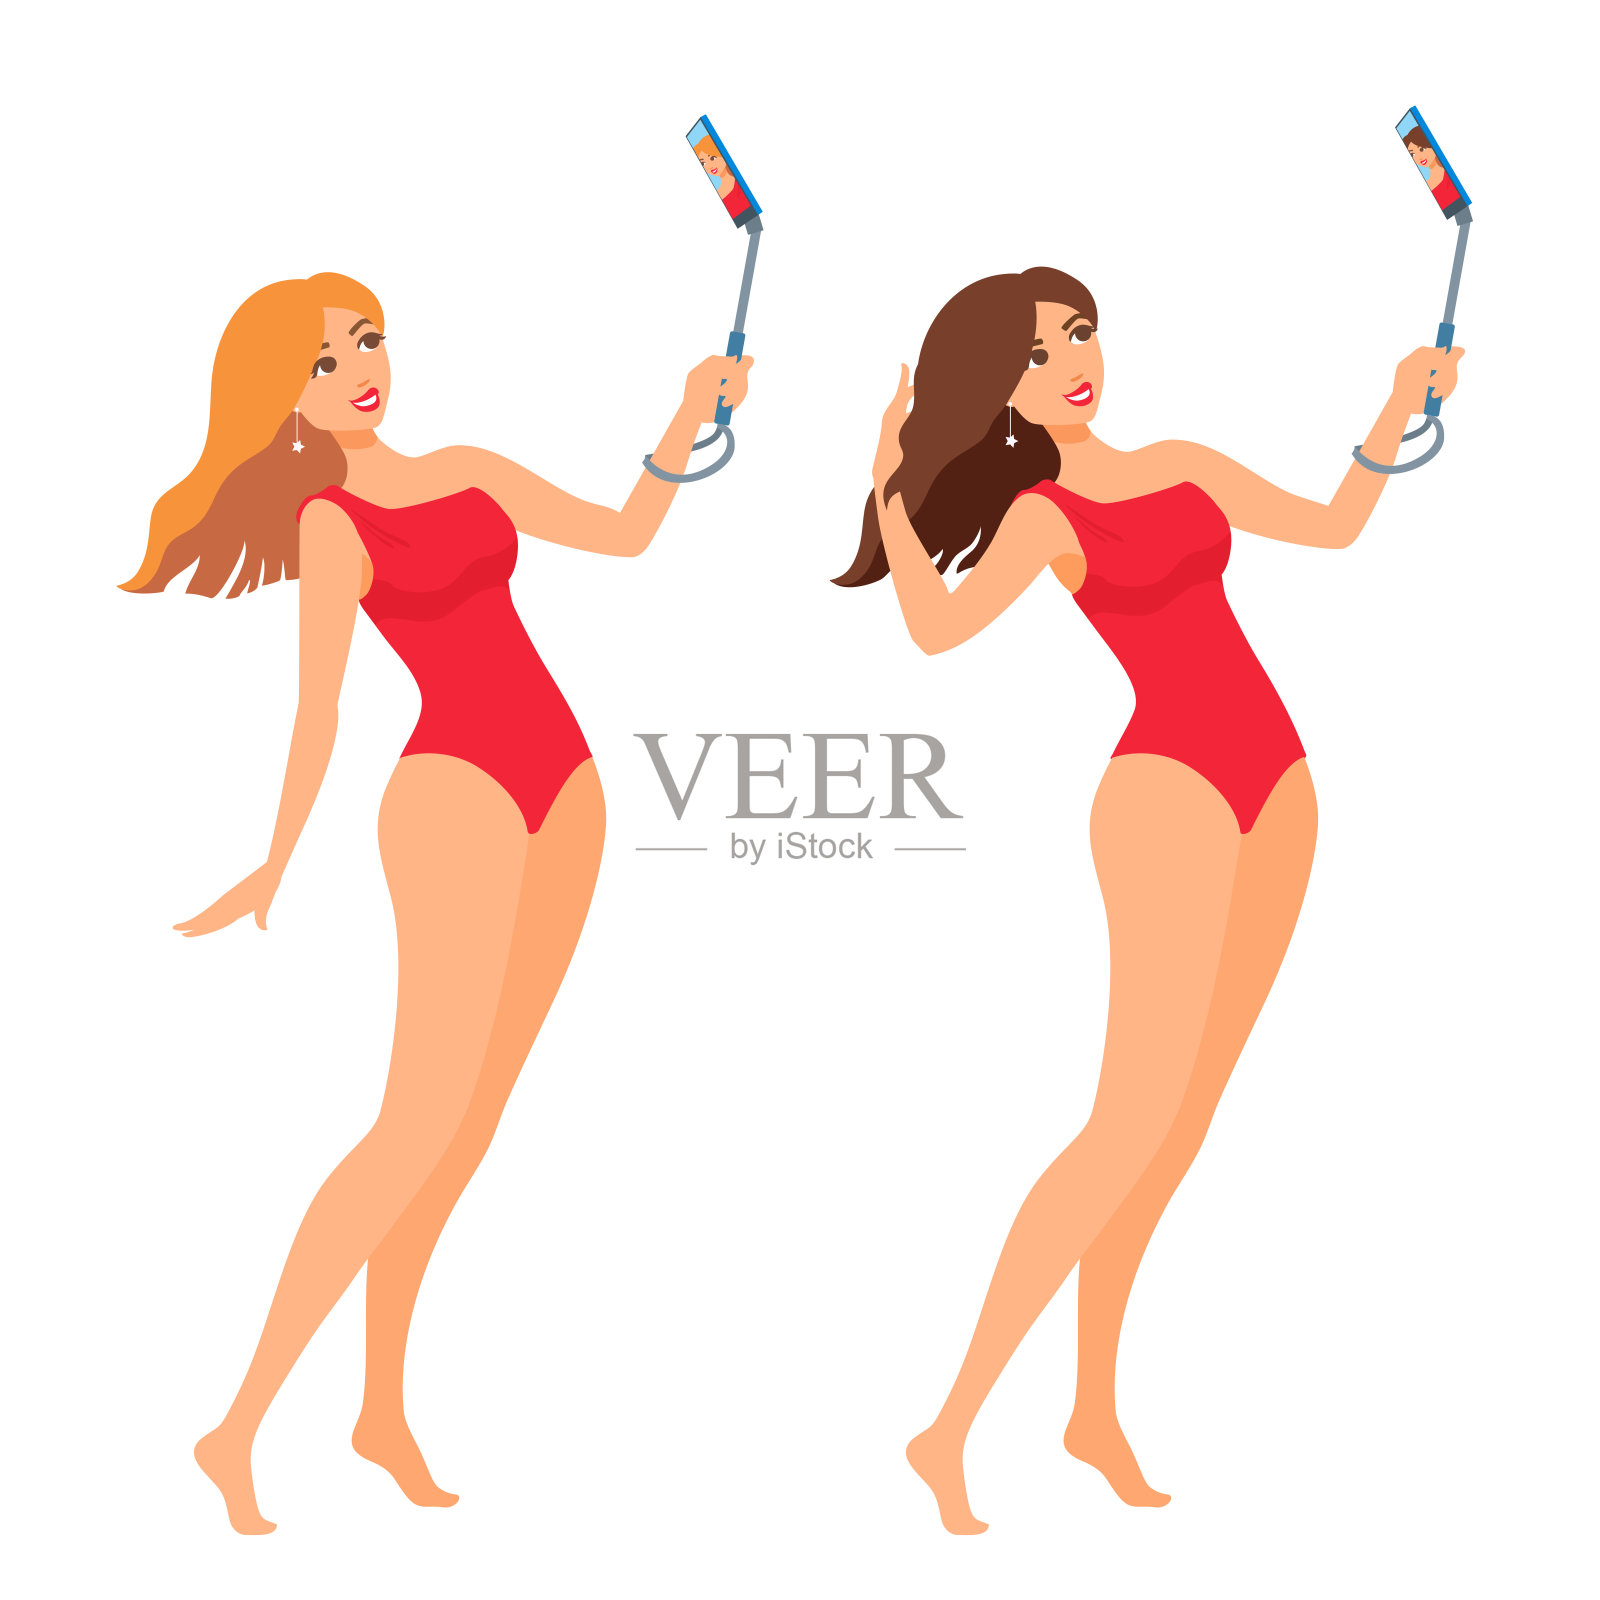 一个穿着红色泳衣的漂亮女人在自拍。女孩微笑着，看着手机。插画图片素材